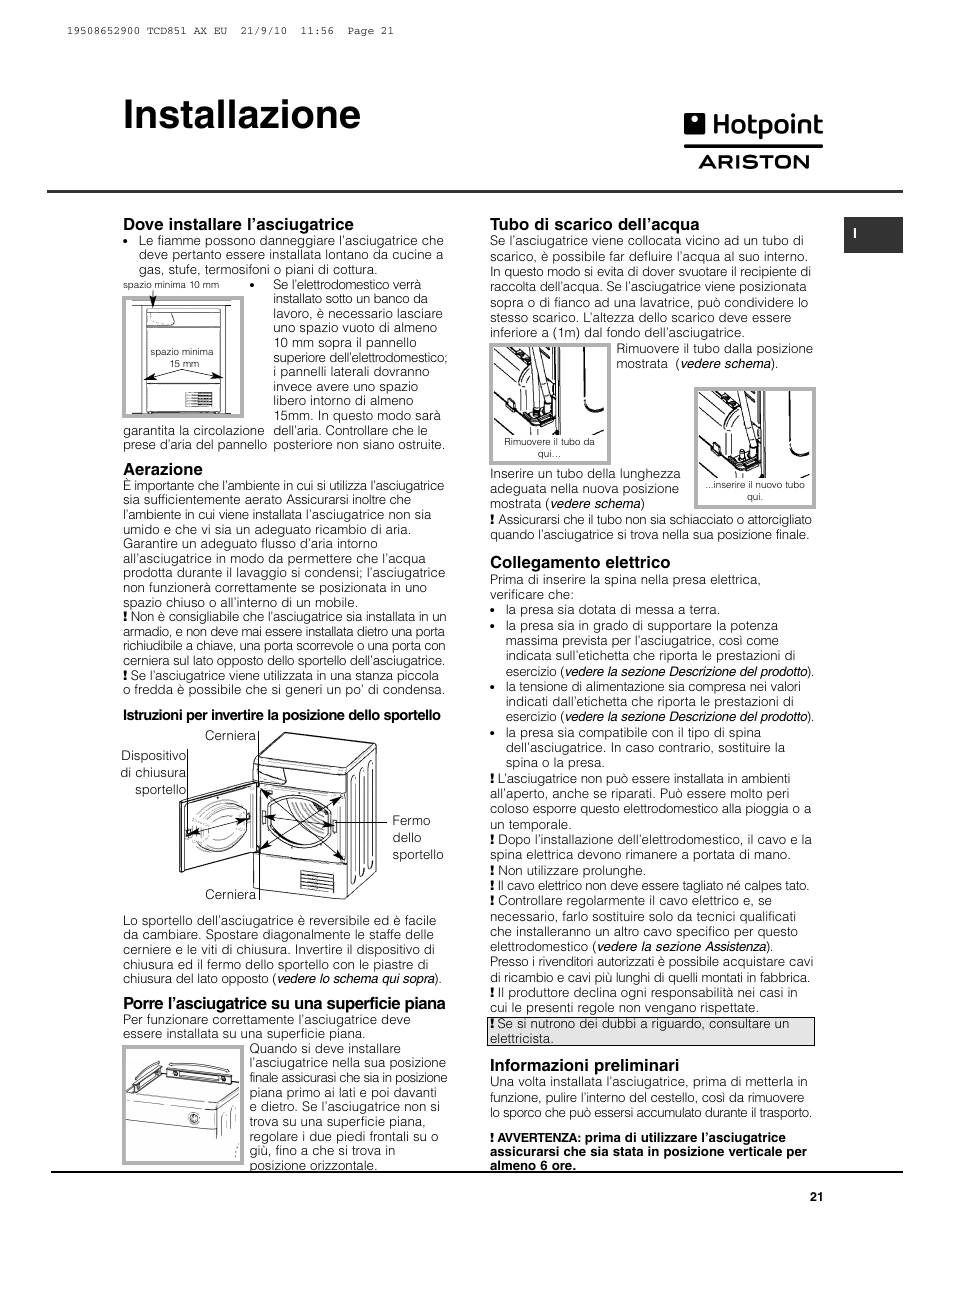 Installazione | Hotpoint Ariston TCD 851 AX User Manual | Page 21 / 88